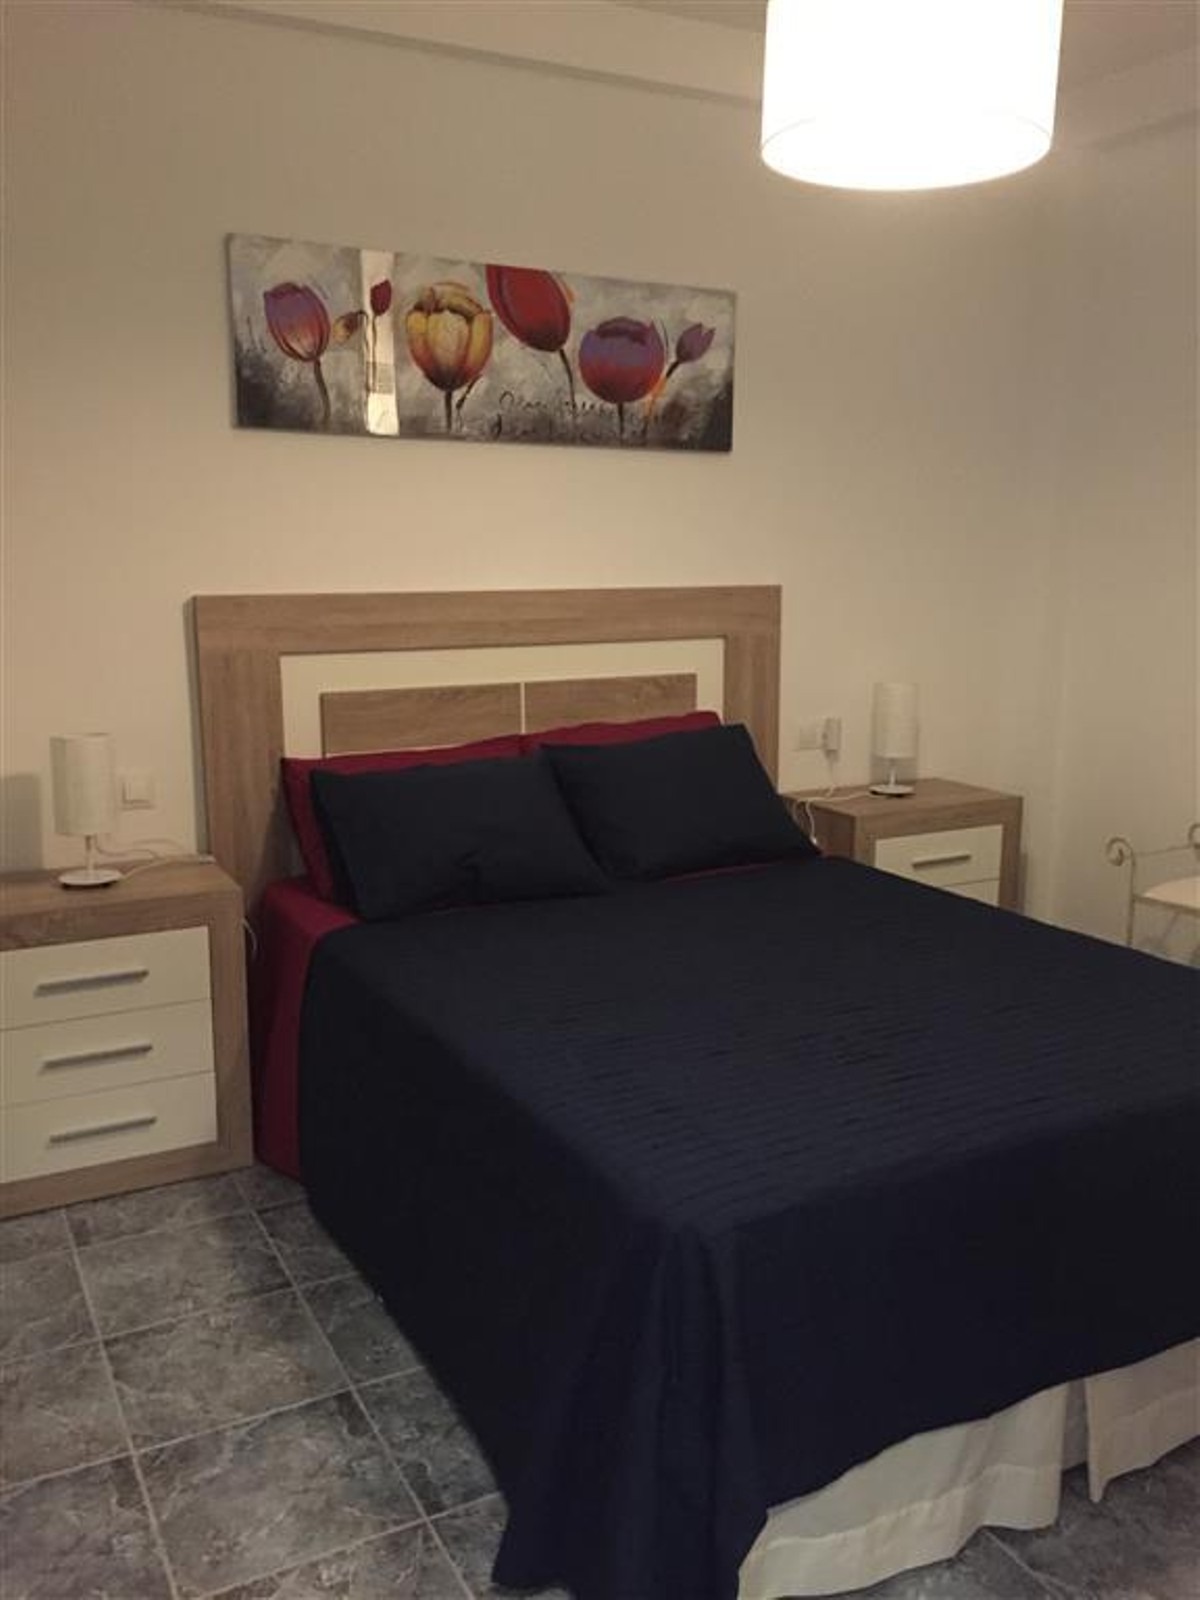 Apartamento de 1 dormitorio en alquiler en Estepona en primera línea de mar - mibgroup.es